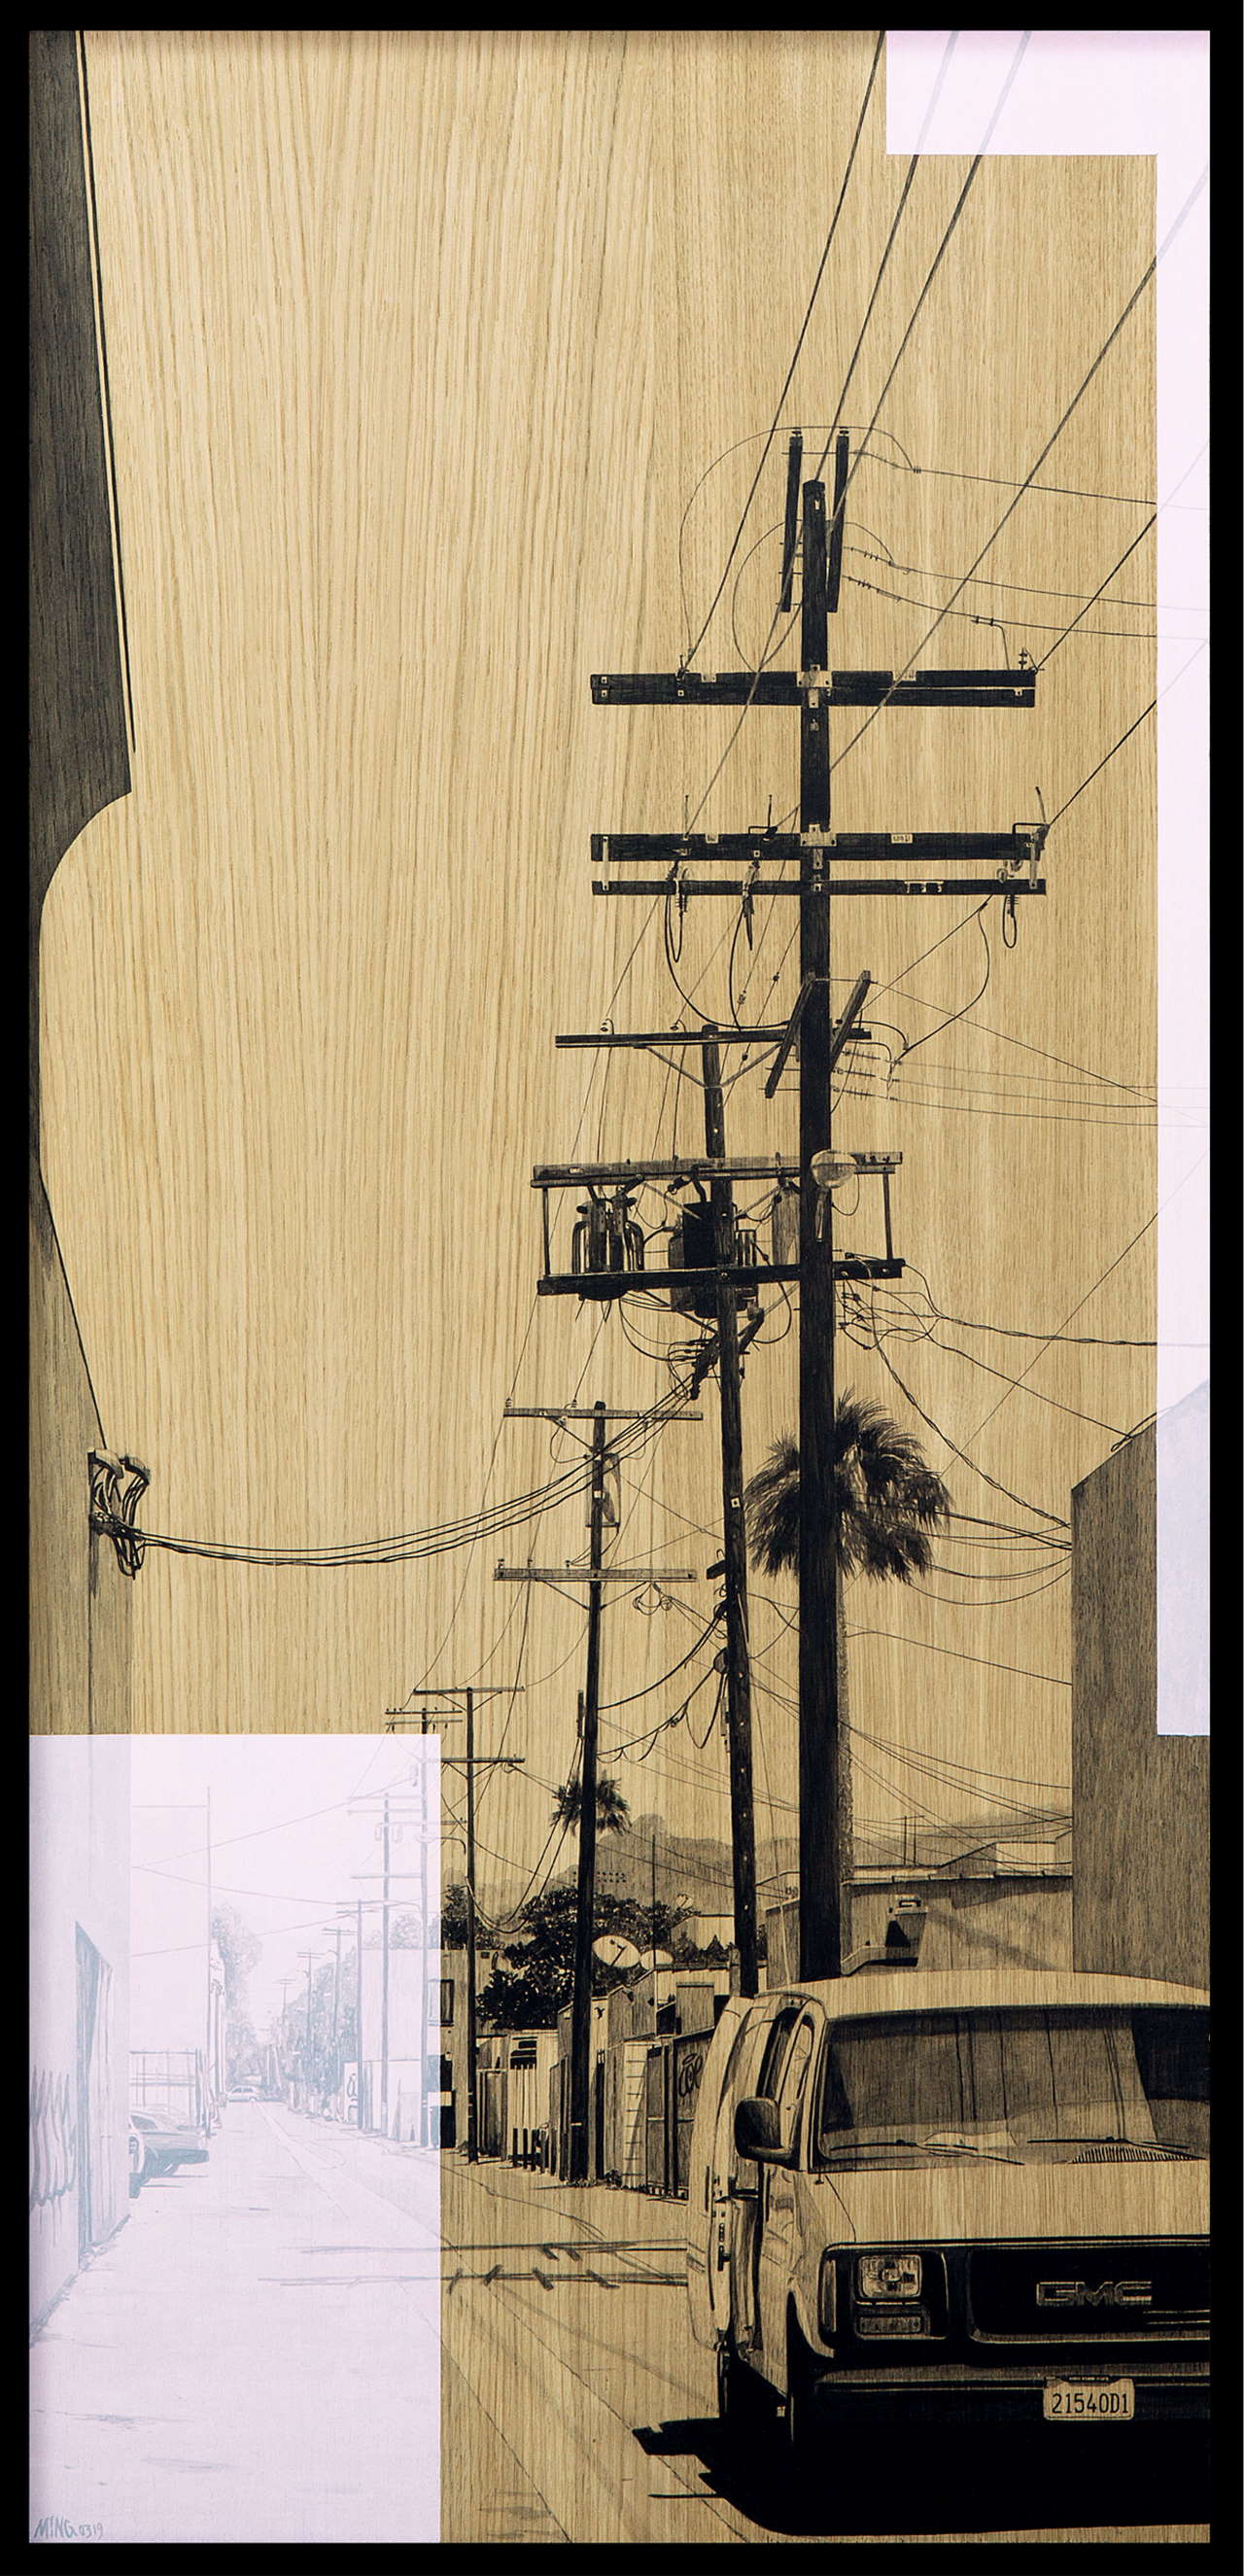 Laurent Minguet，《运往洛杉矶》，2019 年。亚克力橡木板，60 x 128 厘米 - 2019。© Laurent Minguet。